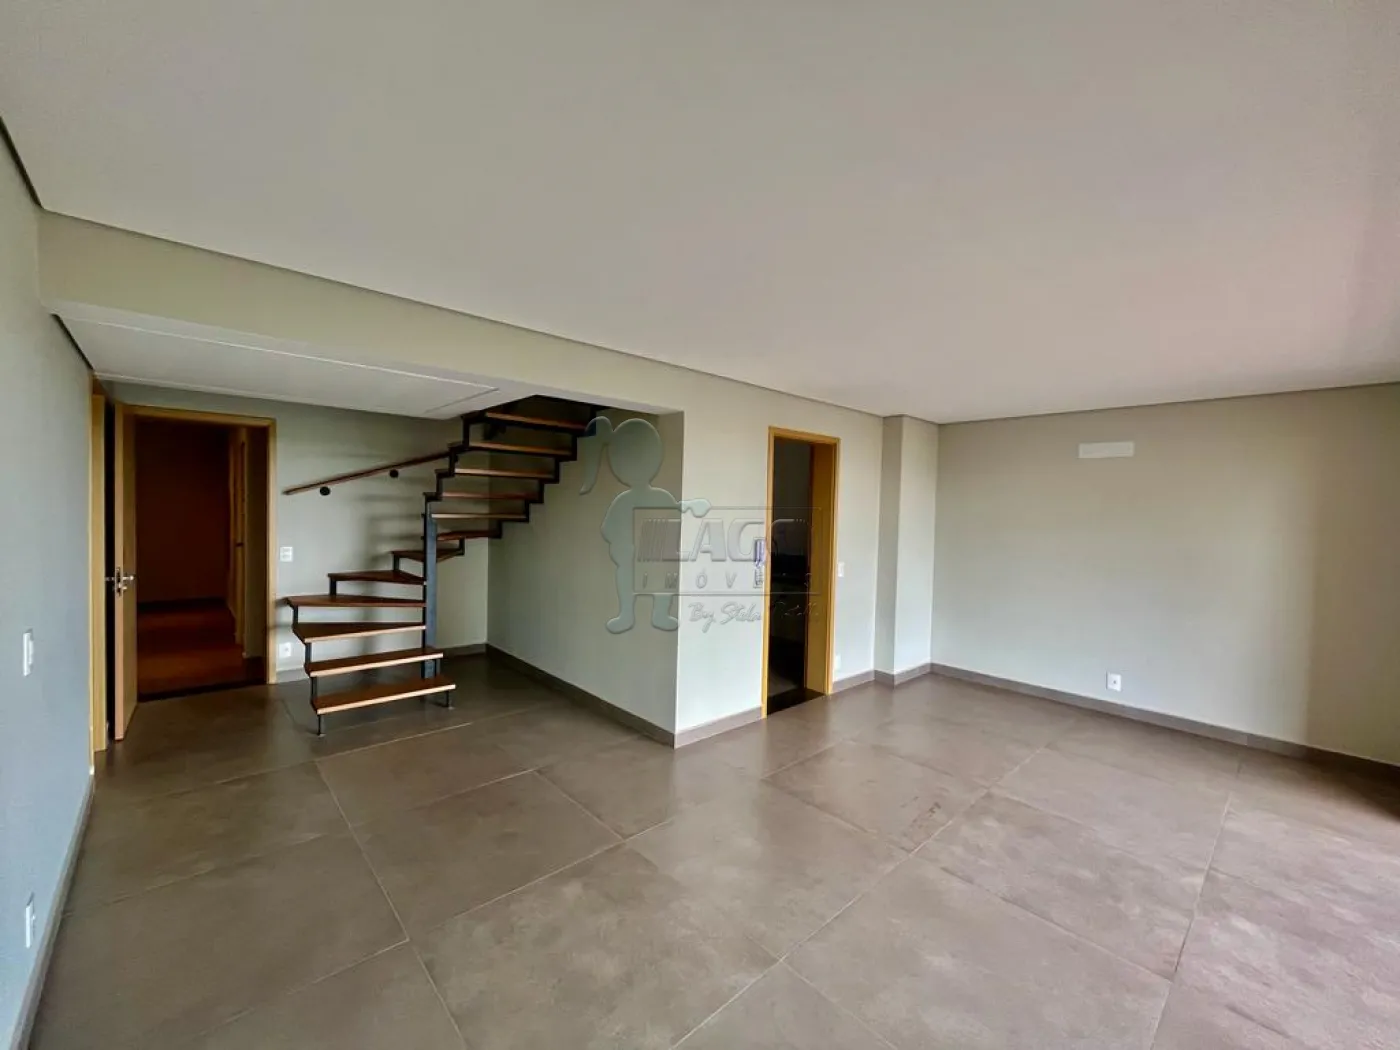 Comprar Apartamentos / Duplex em Ribeirão Preto R$ 790.000,00 - Foto 3